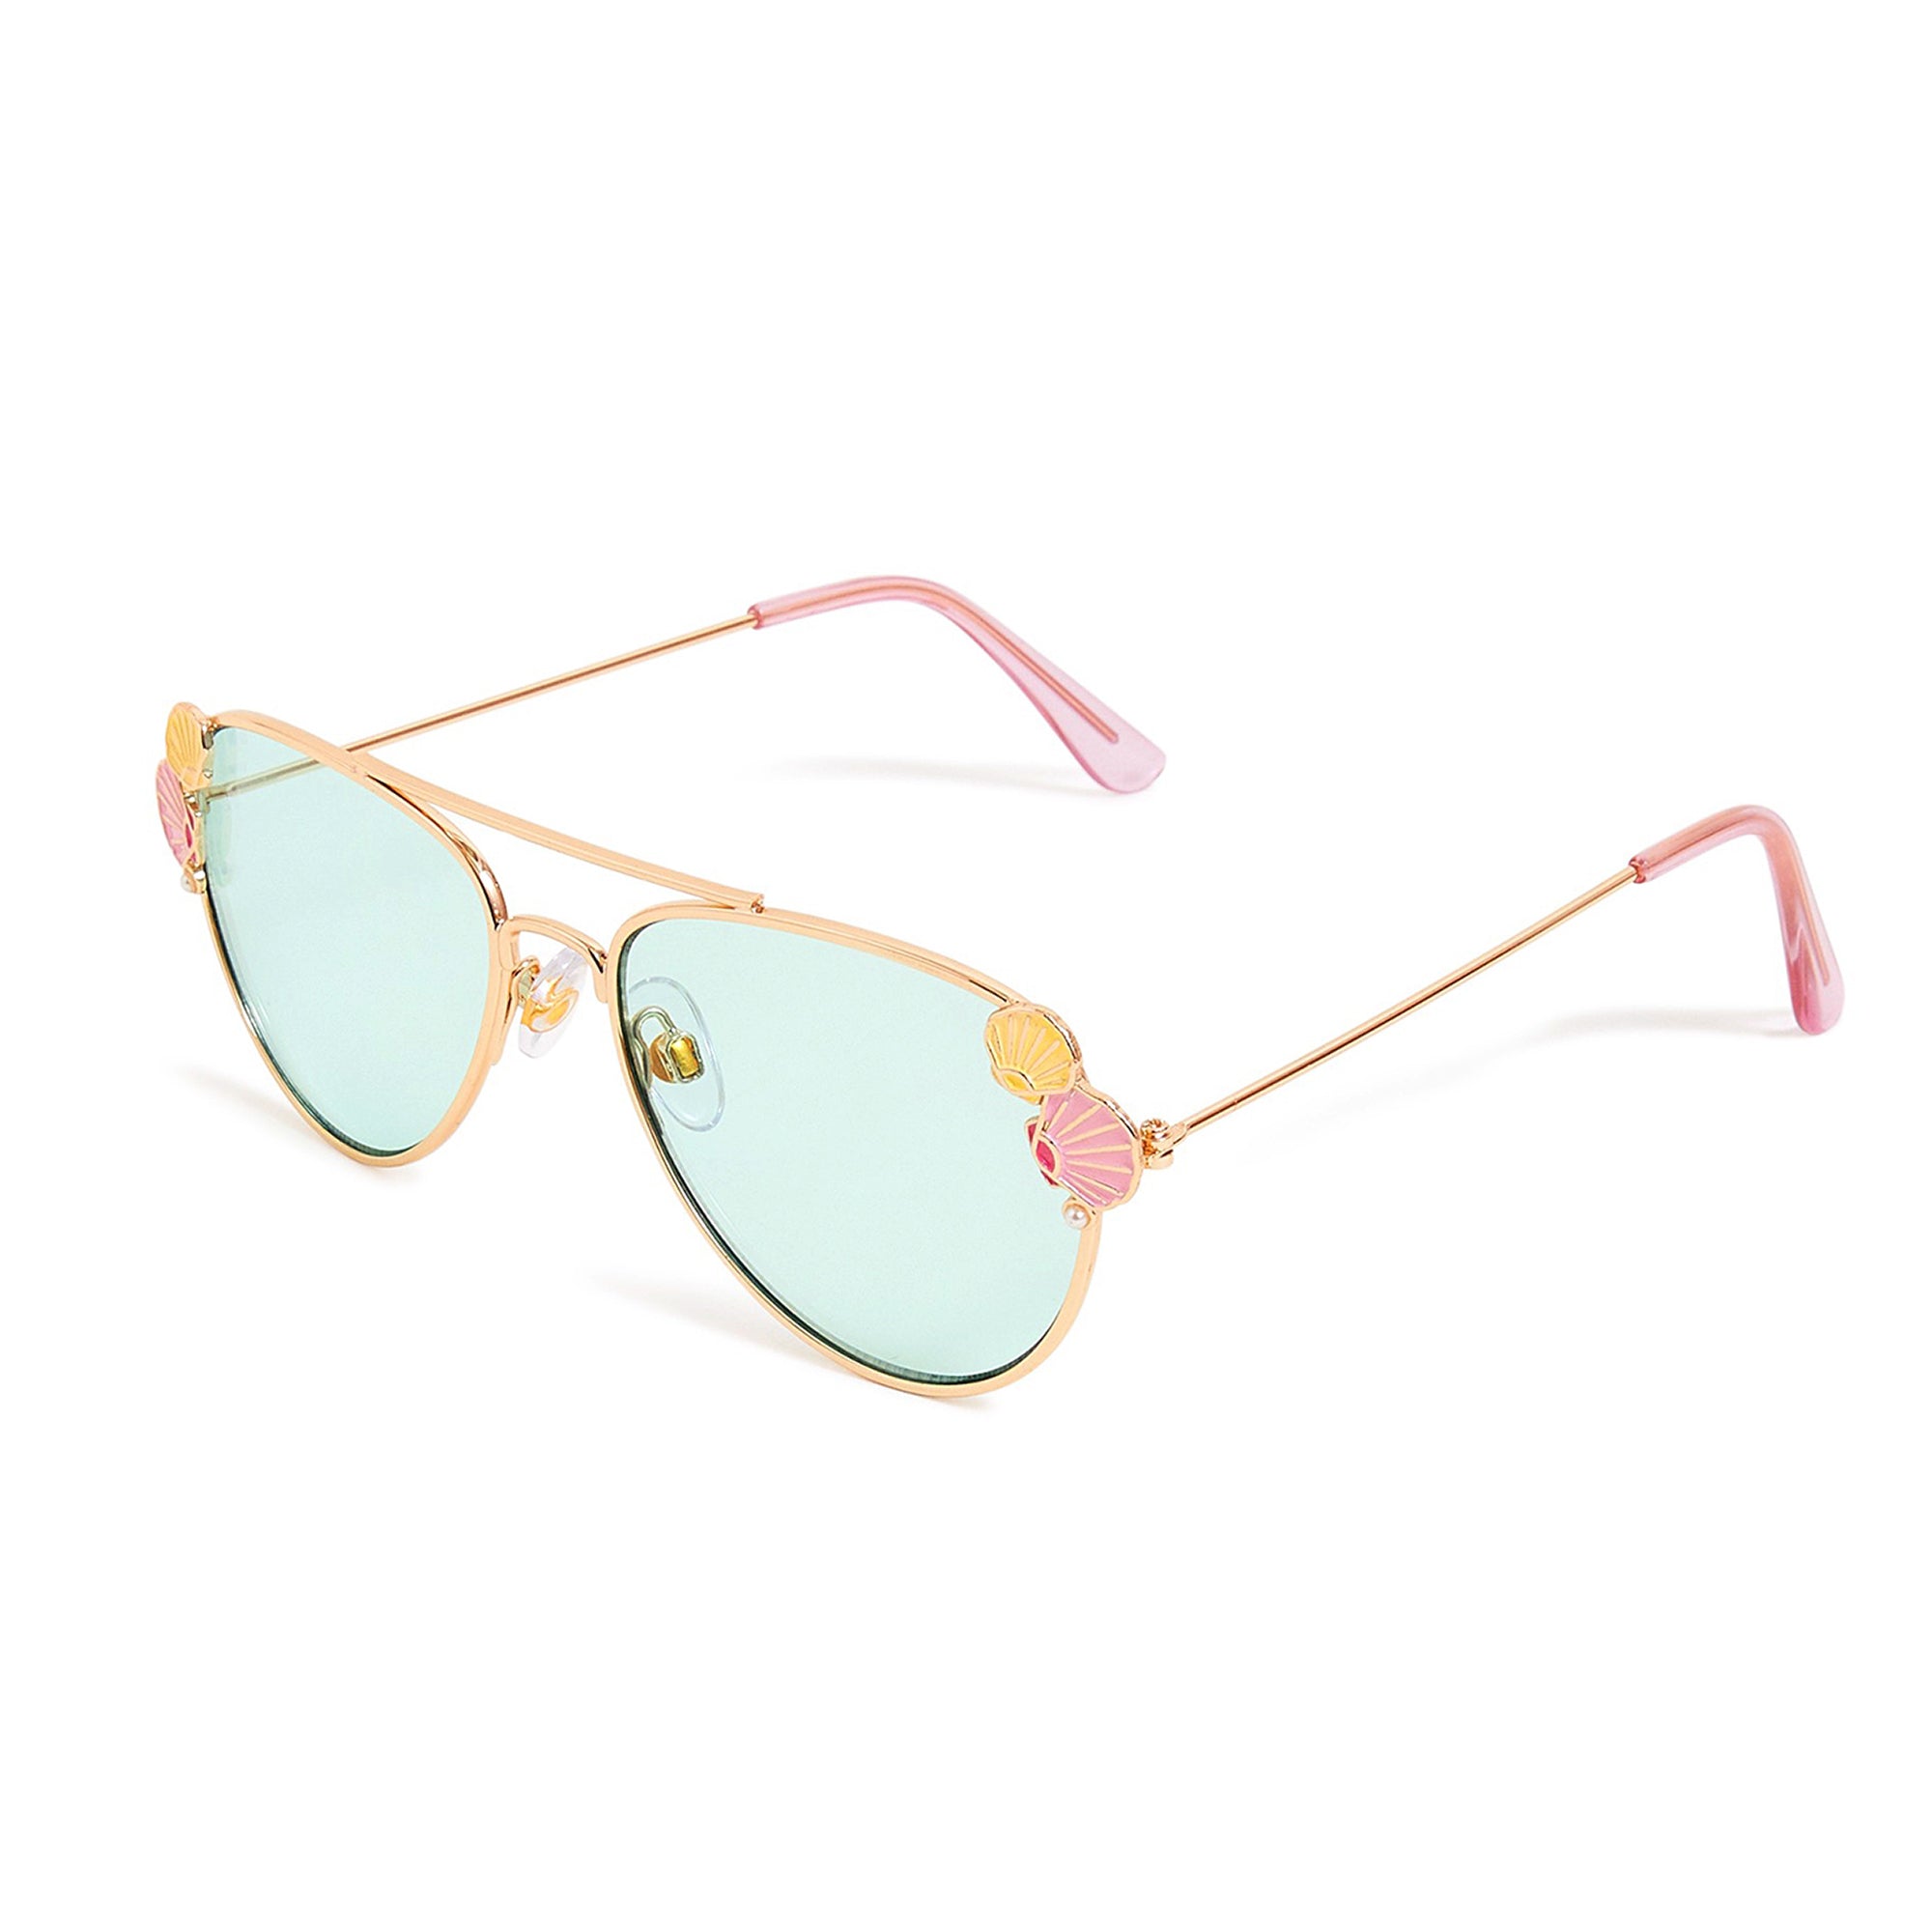 Shell Aviator Sunglasses For Girls